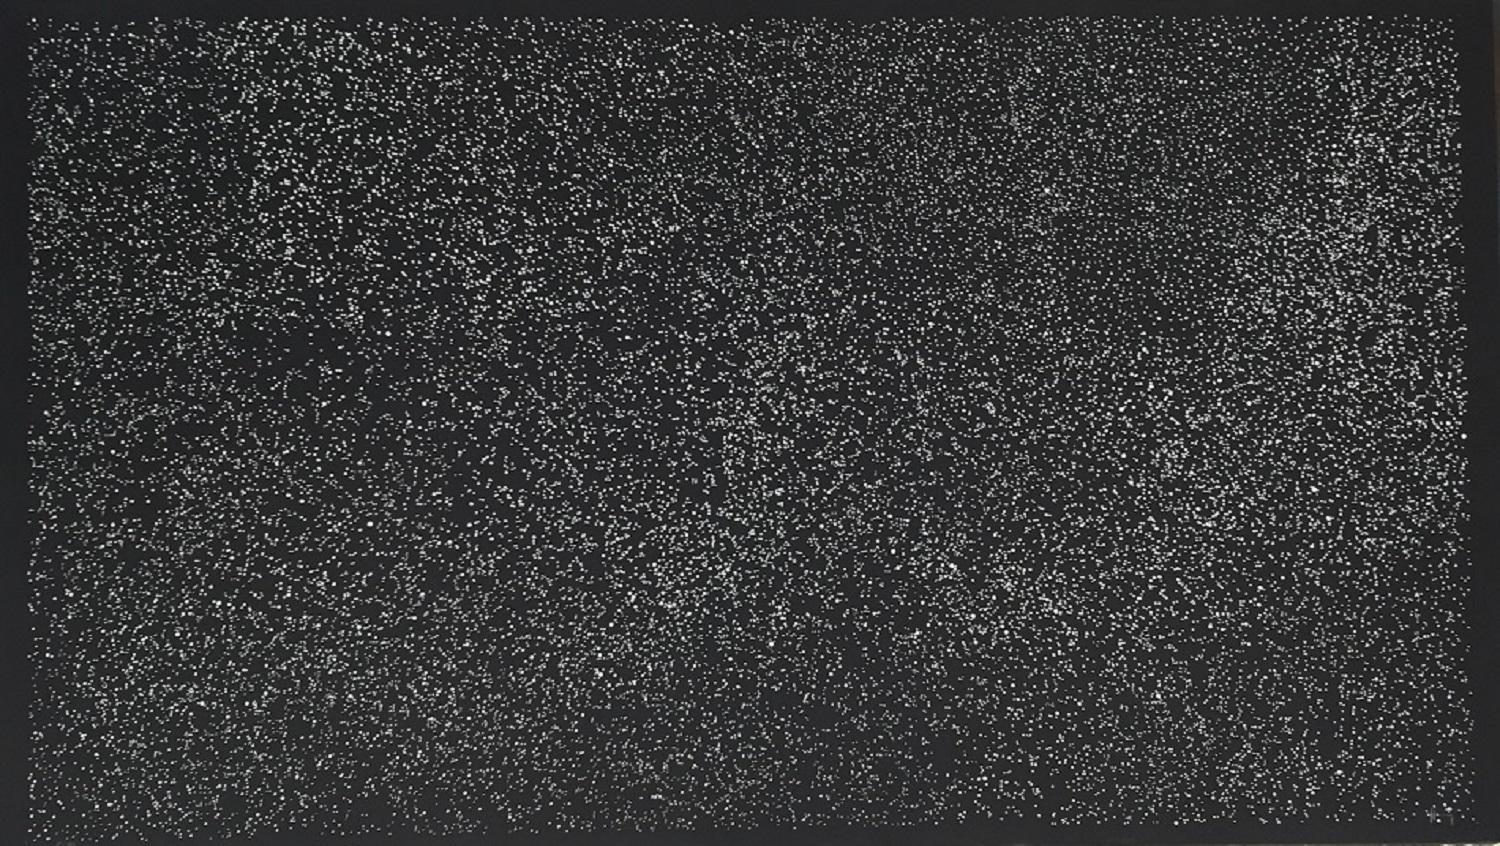 Sergio Hernández, 'Cielo Estrellado', 2011, Woodcut, 46.5x82.7 in